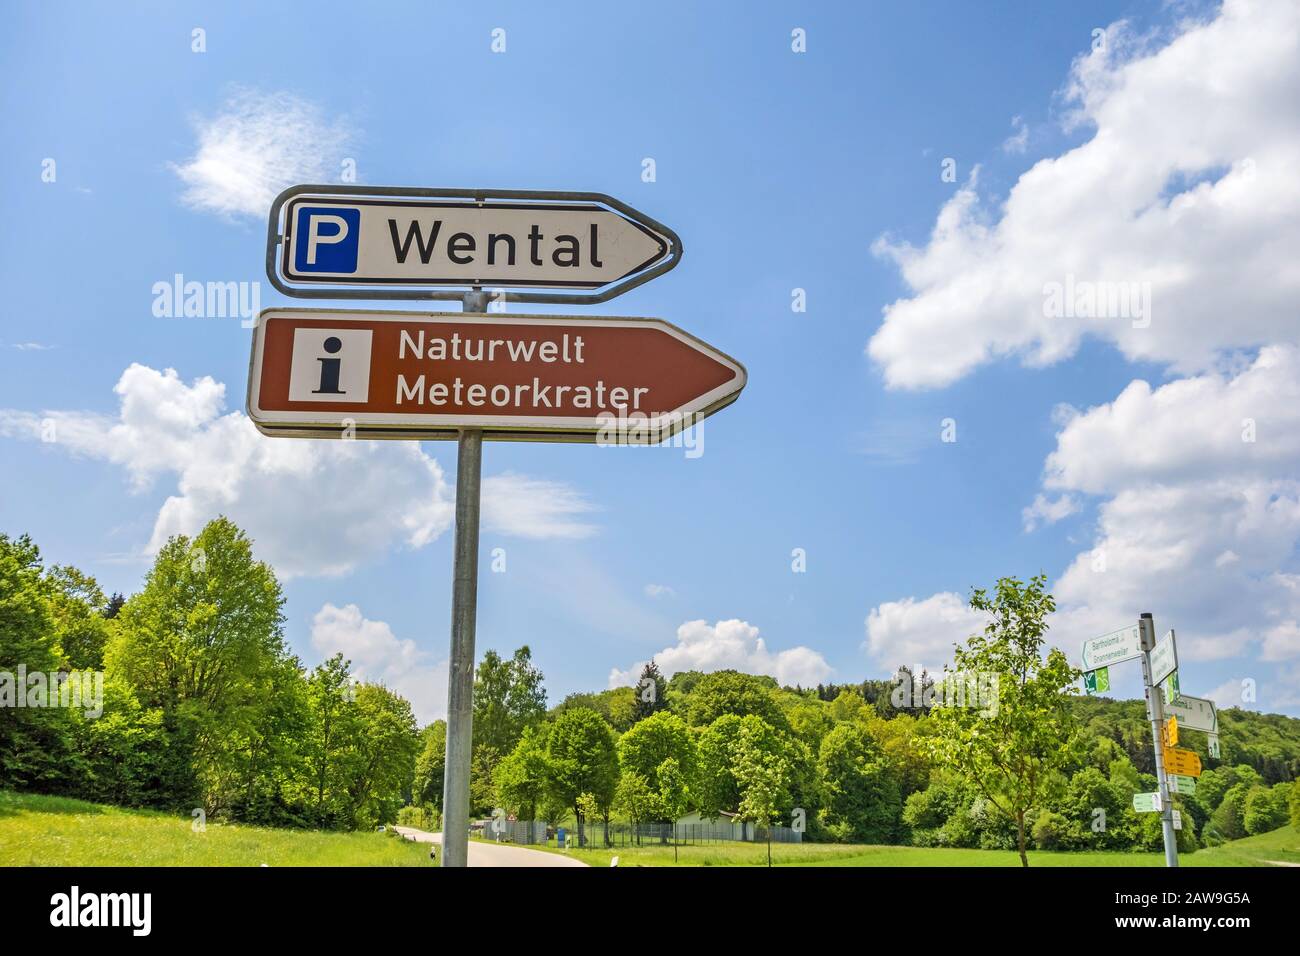 Steinheim, Wental, Germania - 26 maggio 2016: Cartello "Wental" della Valle che mostra il percorso per il centro informazioni "Naturwelt Meteorcrater" e il parcheggio Foto Stock